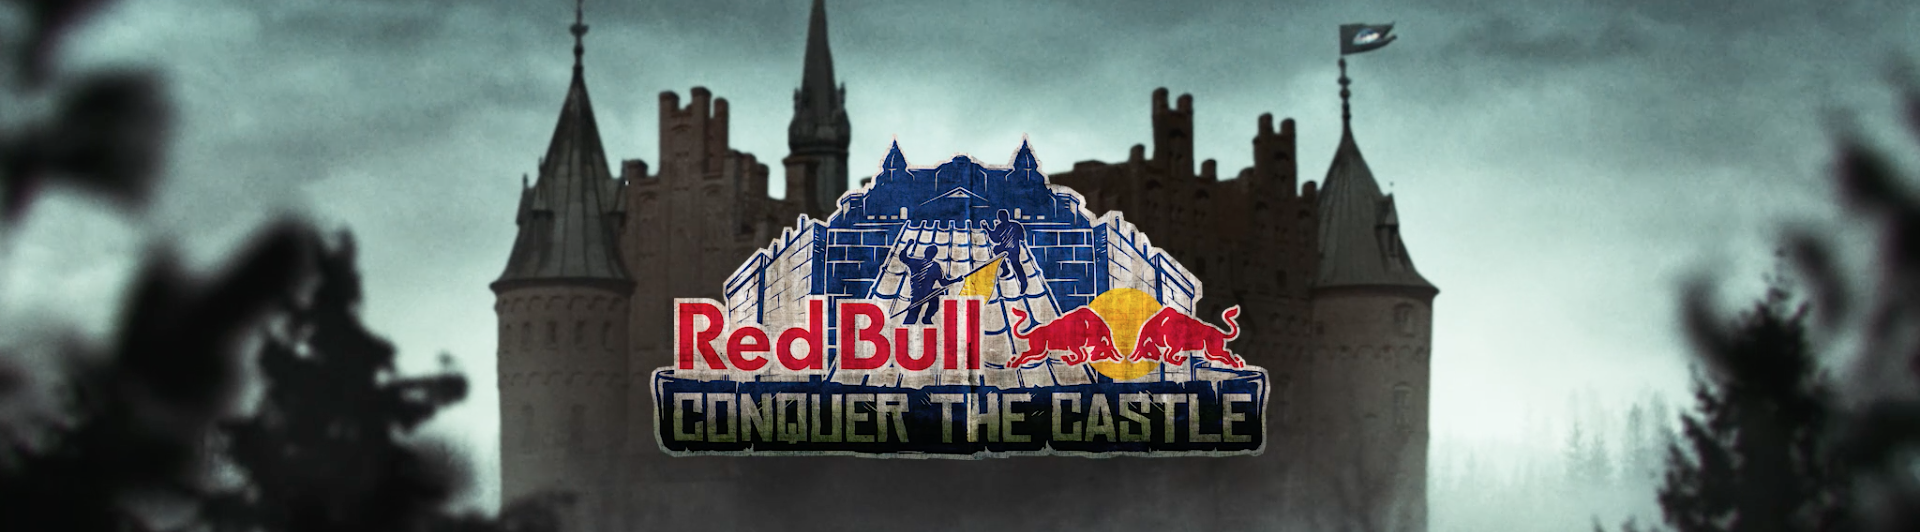 Sportstiming - Red Bull The Castle